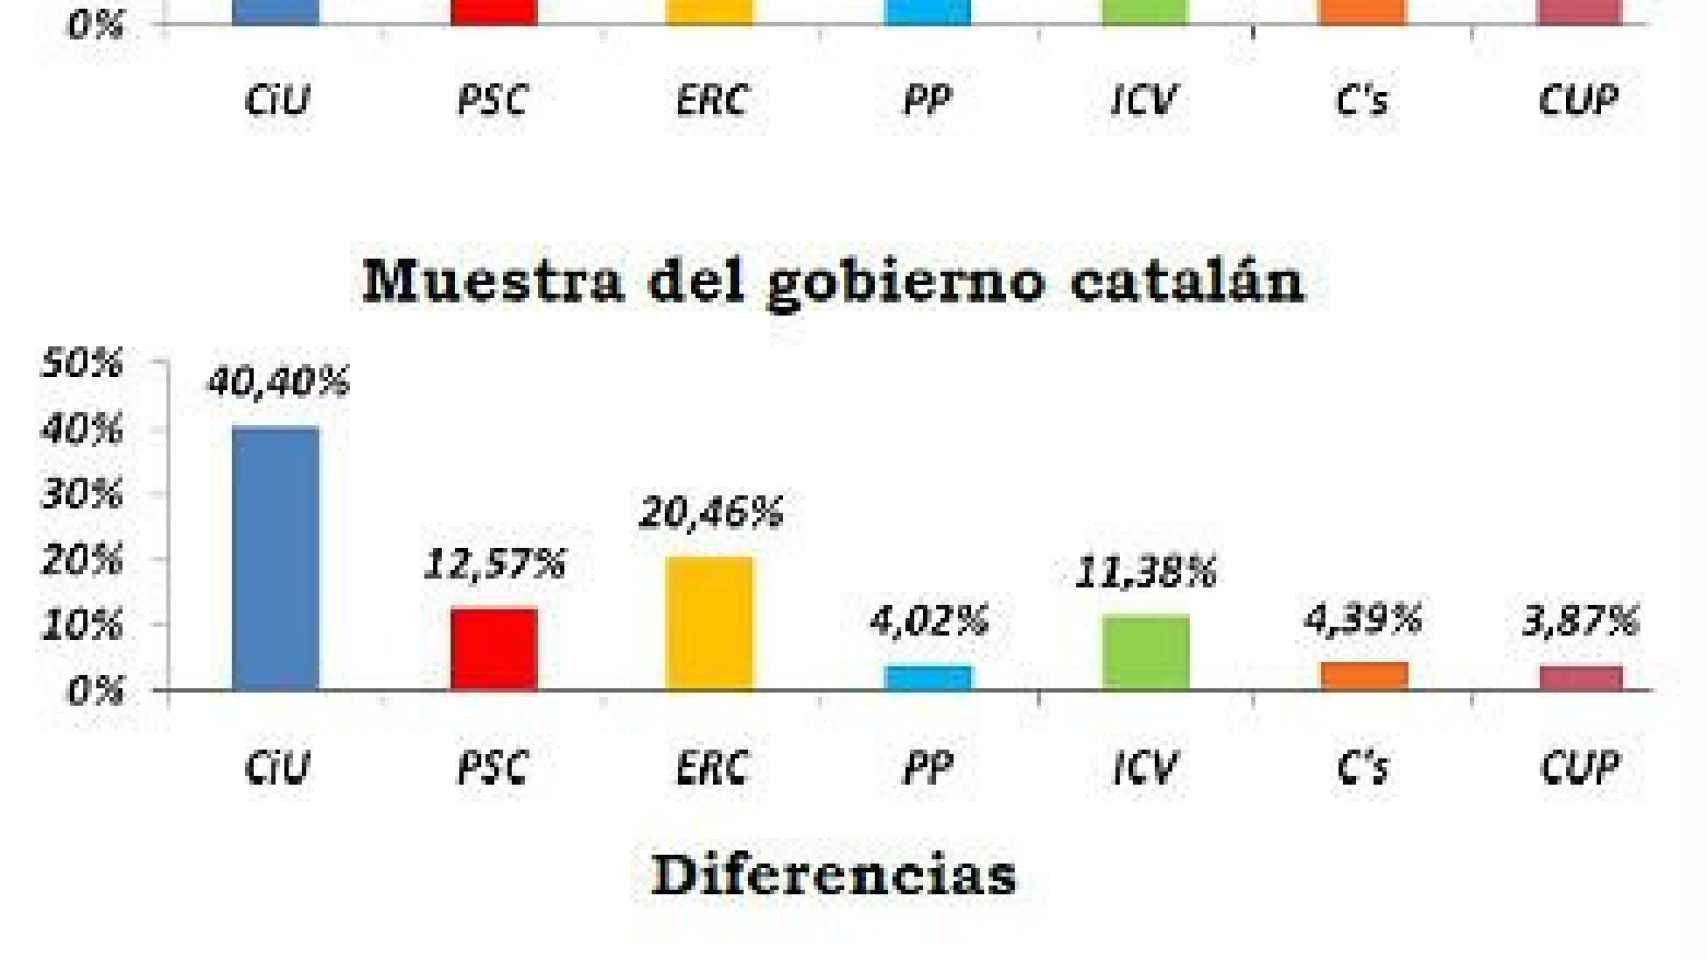 Diferencias entre los resultados en las elecciones autonómicas de 2012 y el recuerdo de voto de la muestra utilizada en el último sondeo del CEO